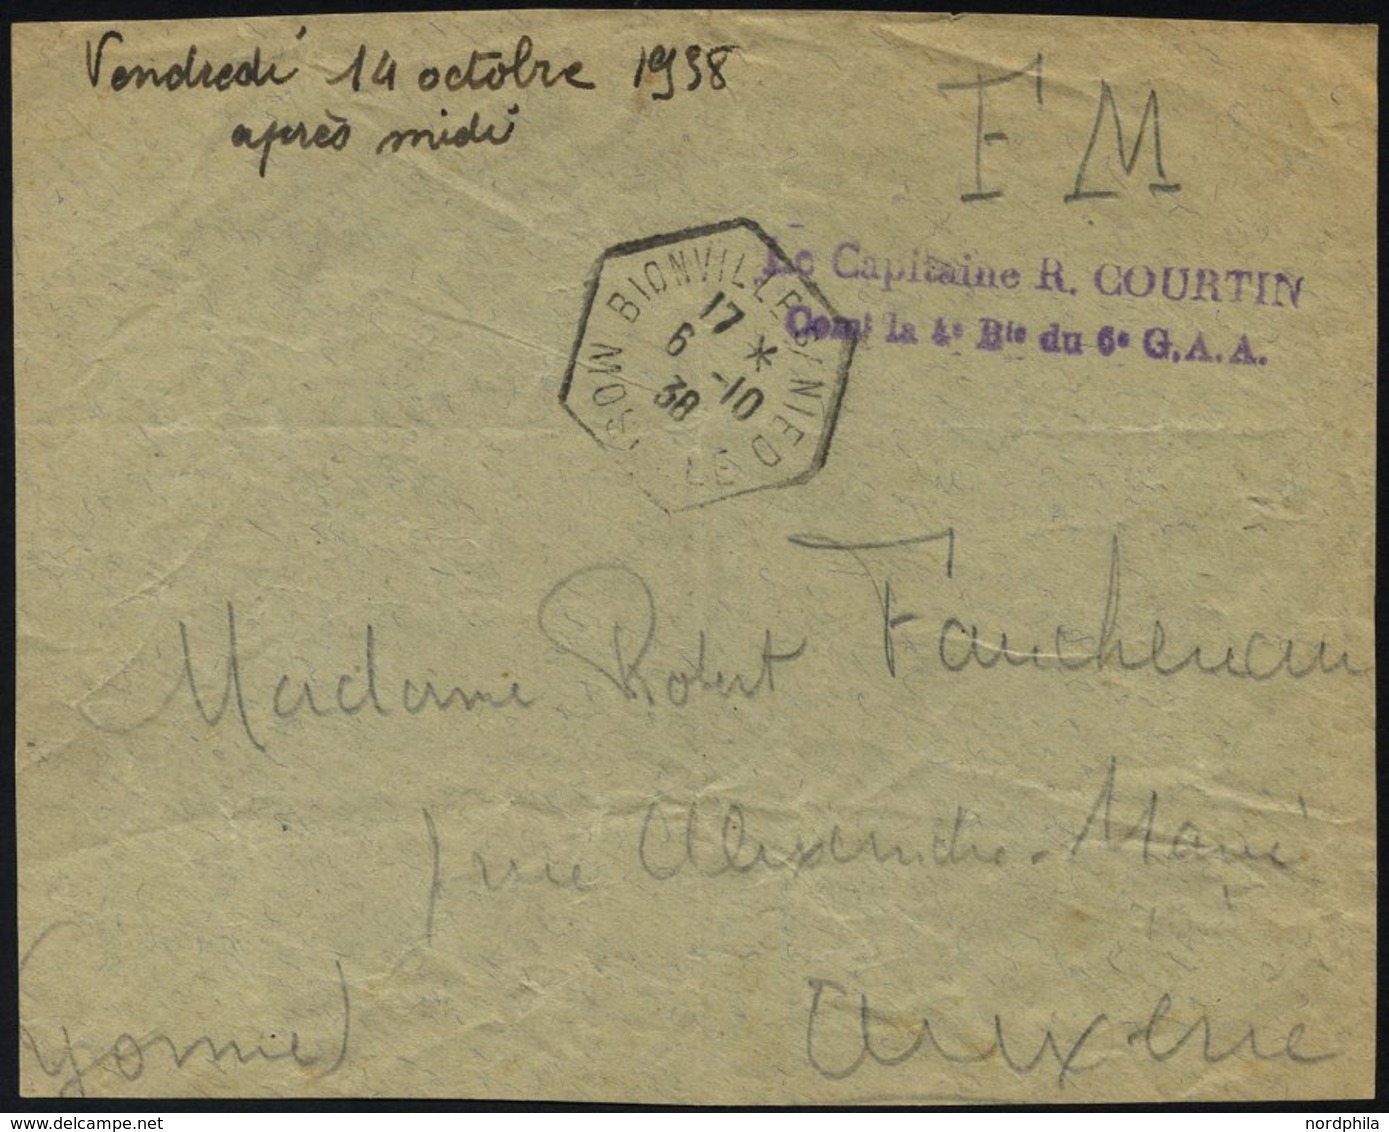 FRANKREICH FELDPOST 1938, Violetter Absenderstempel Le Capitaine R. Courtin, Con La 4 D Du 6 G.A.A. Auf Briefvorderseite - Kriegsmarken